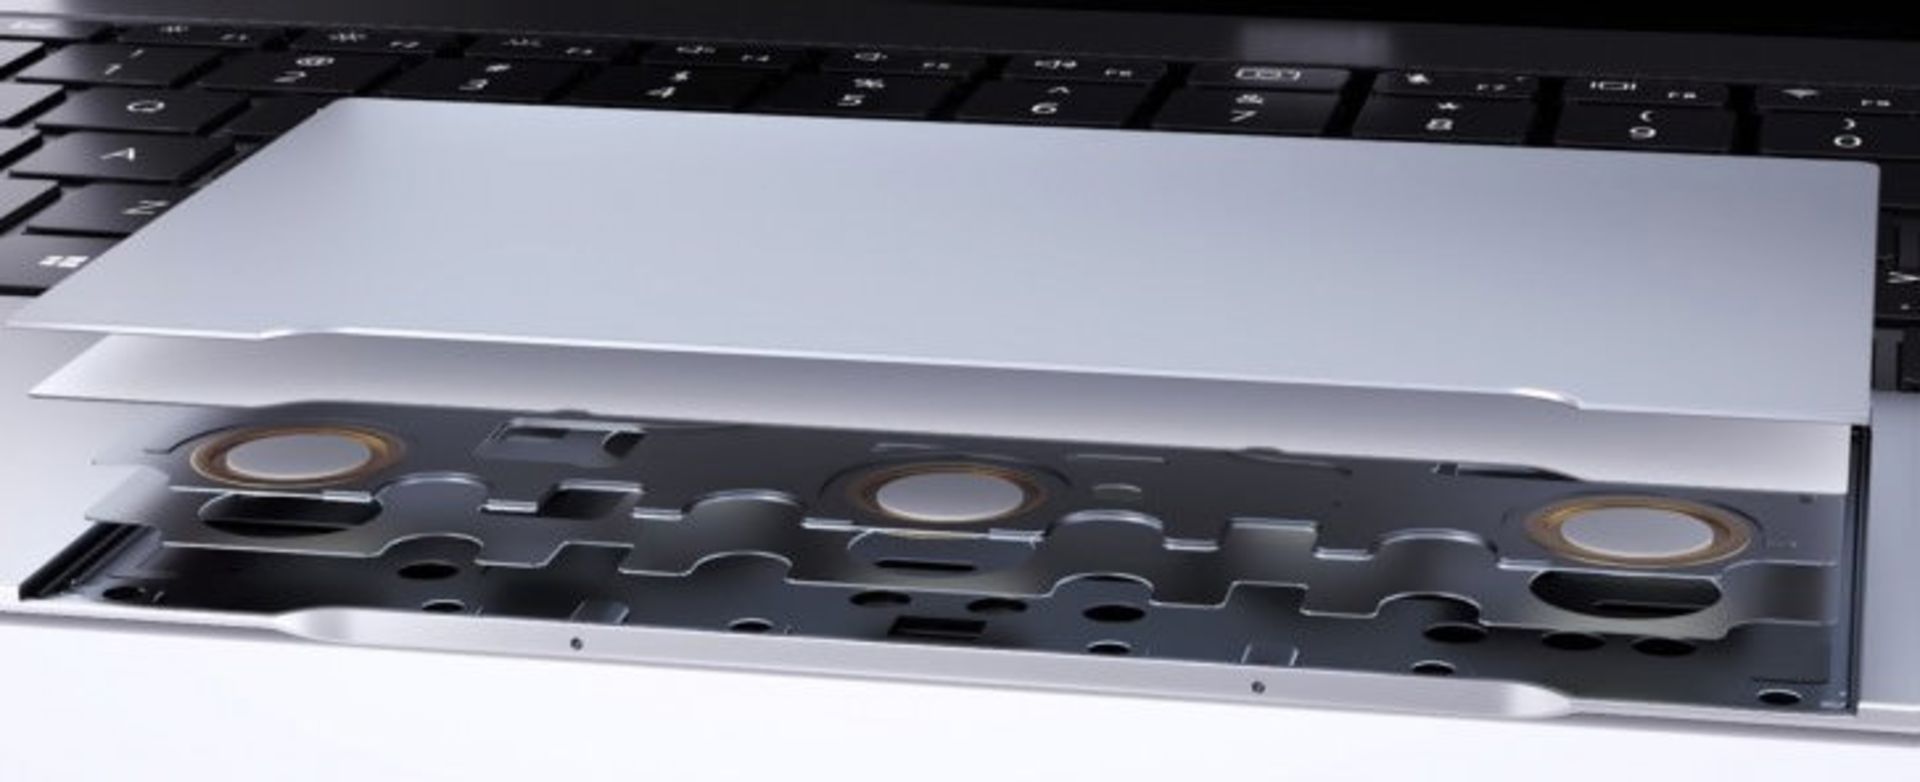 تاچپد هواوی میت بوک ایکس / Huawei MateBook X